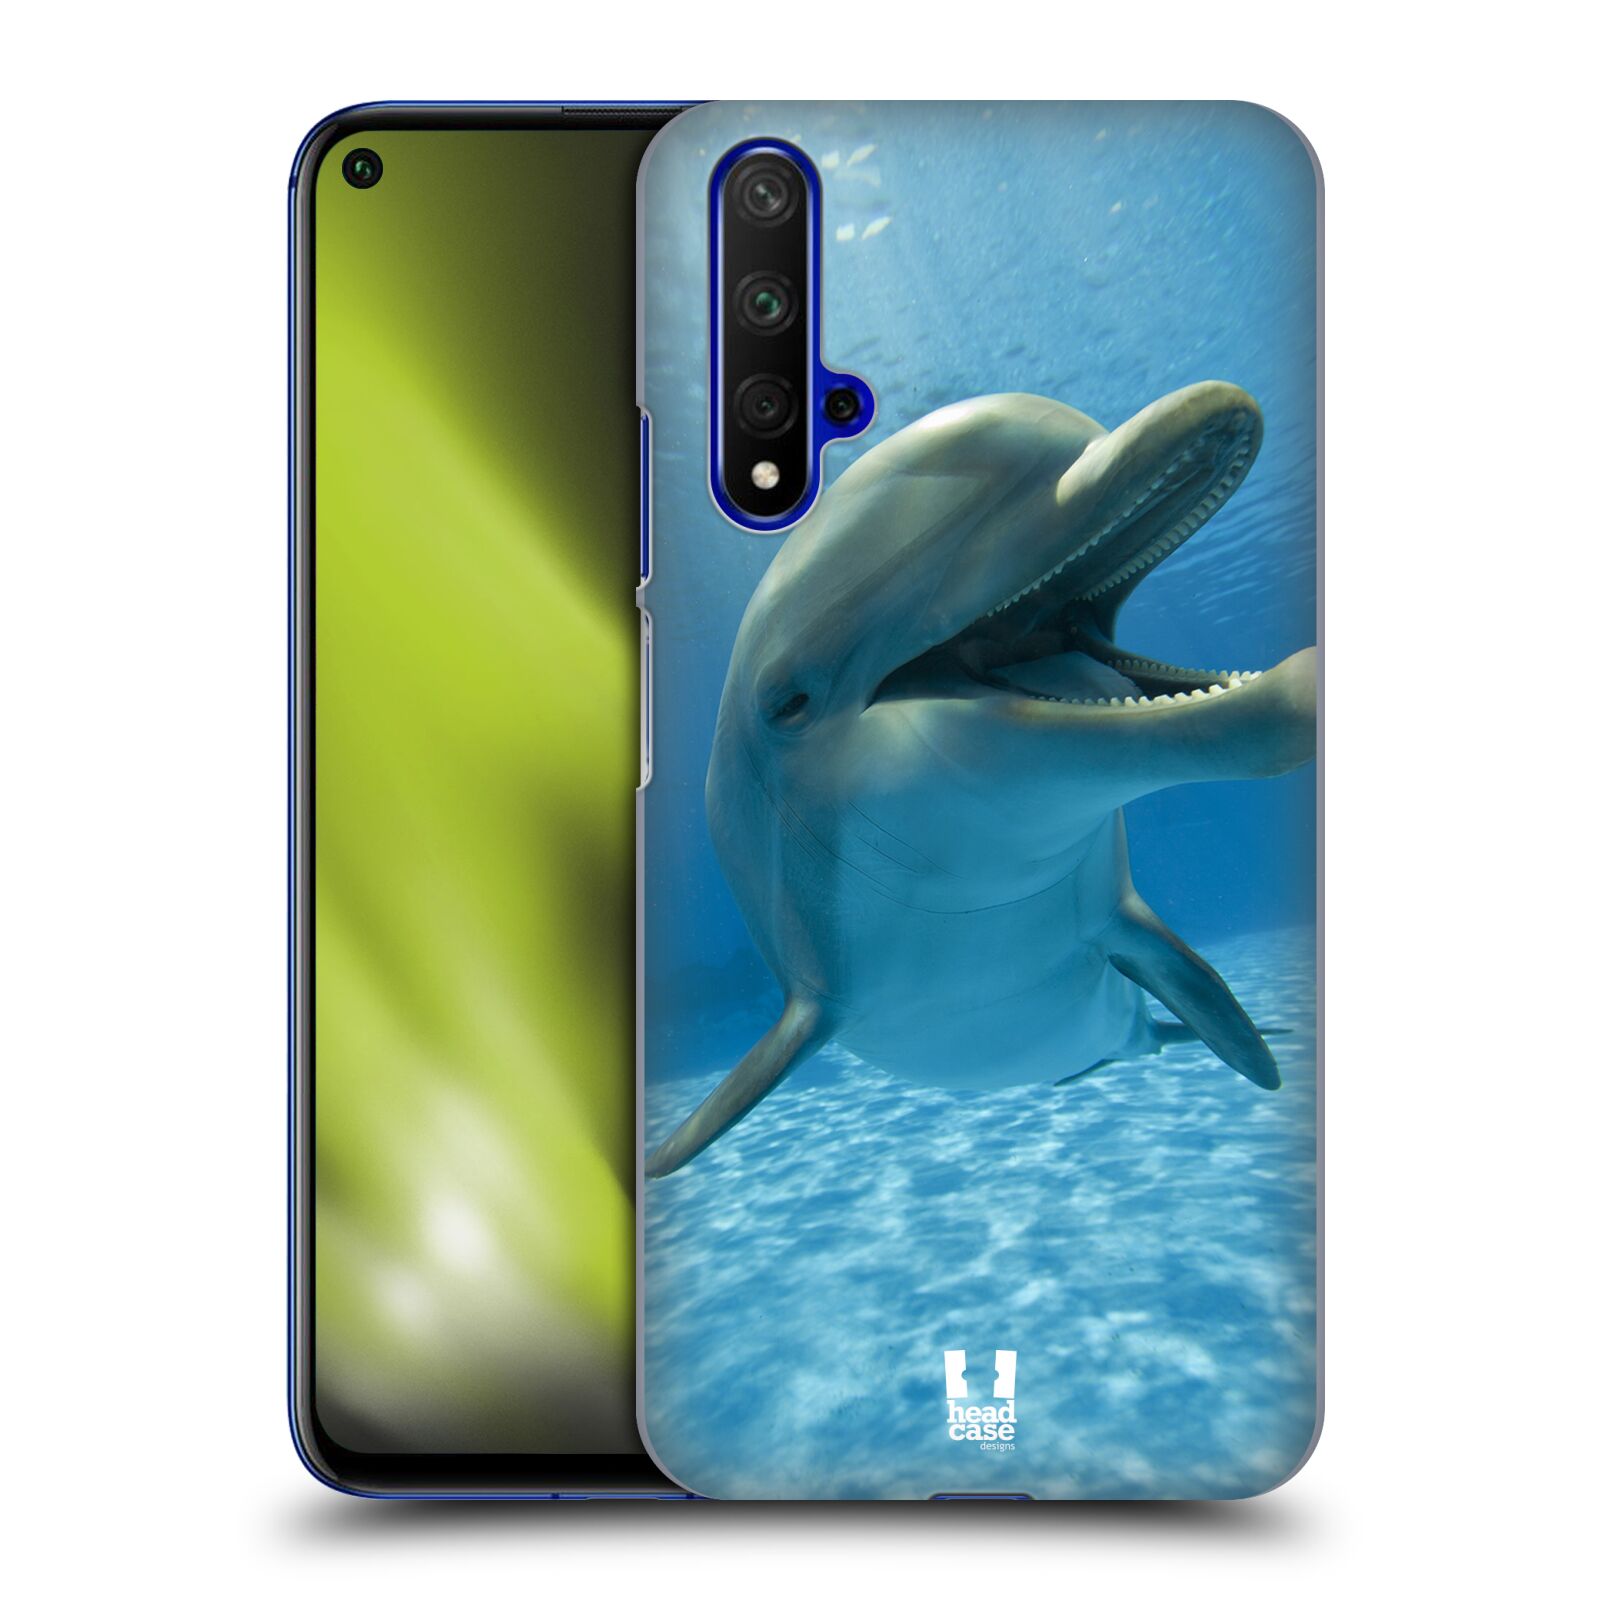 Zadní obal pro mobil Honor 20 - HEAD CASE - Svět zvířat delfín v moři